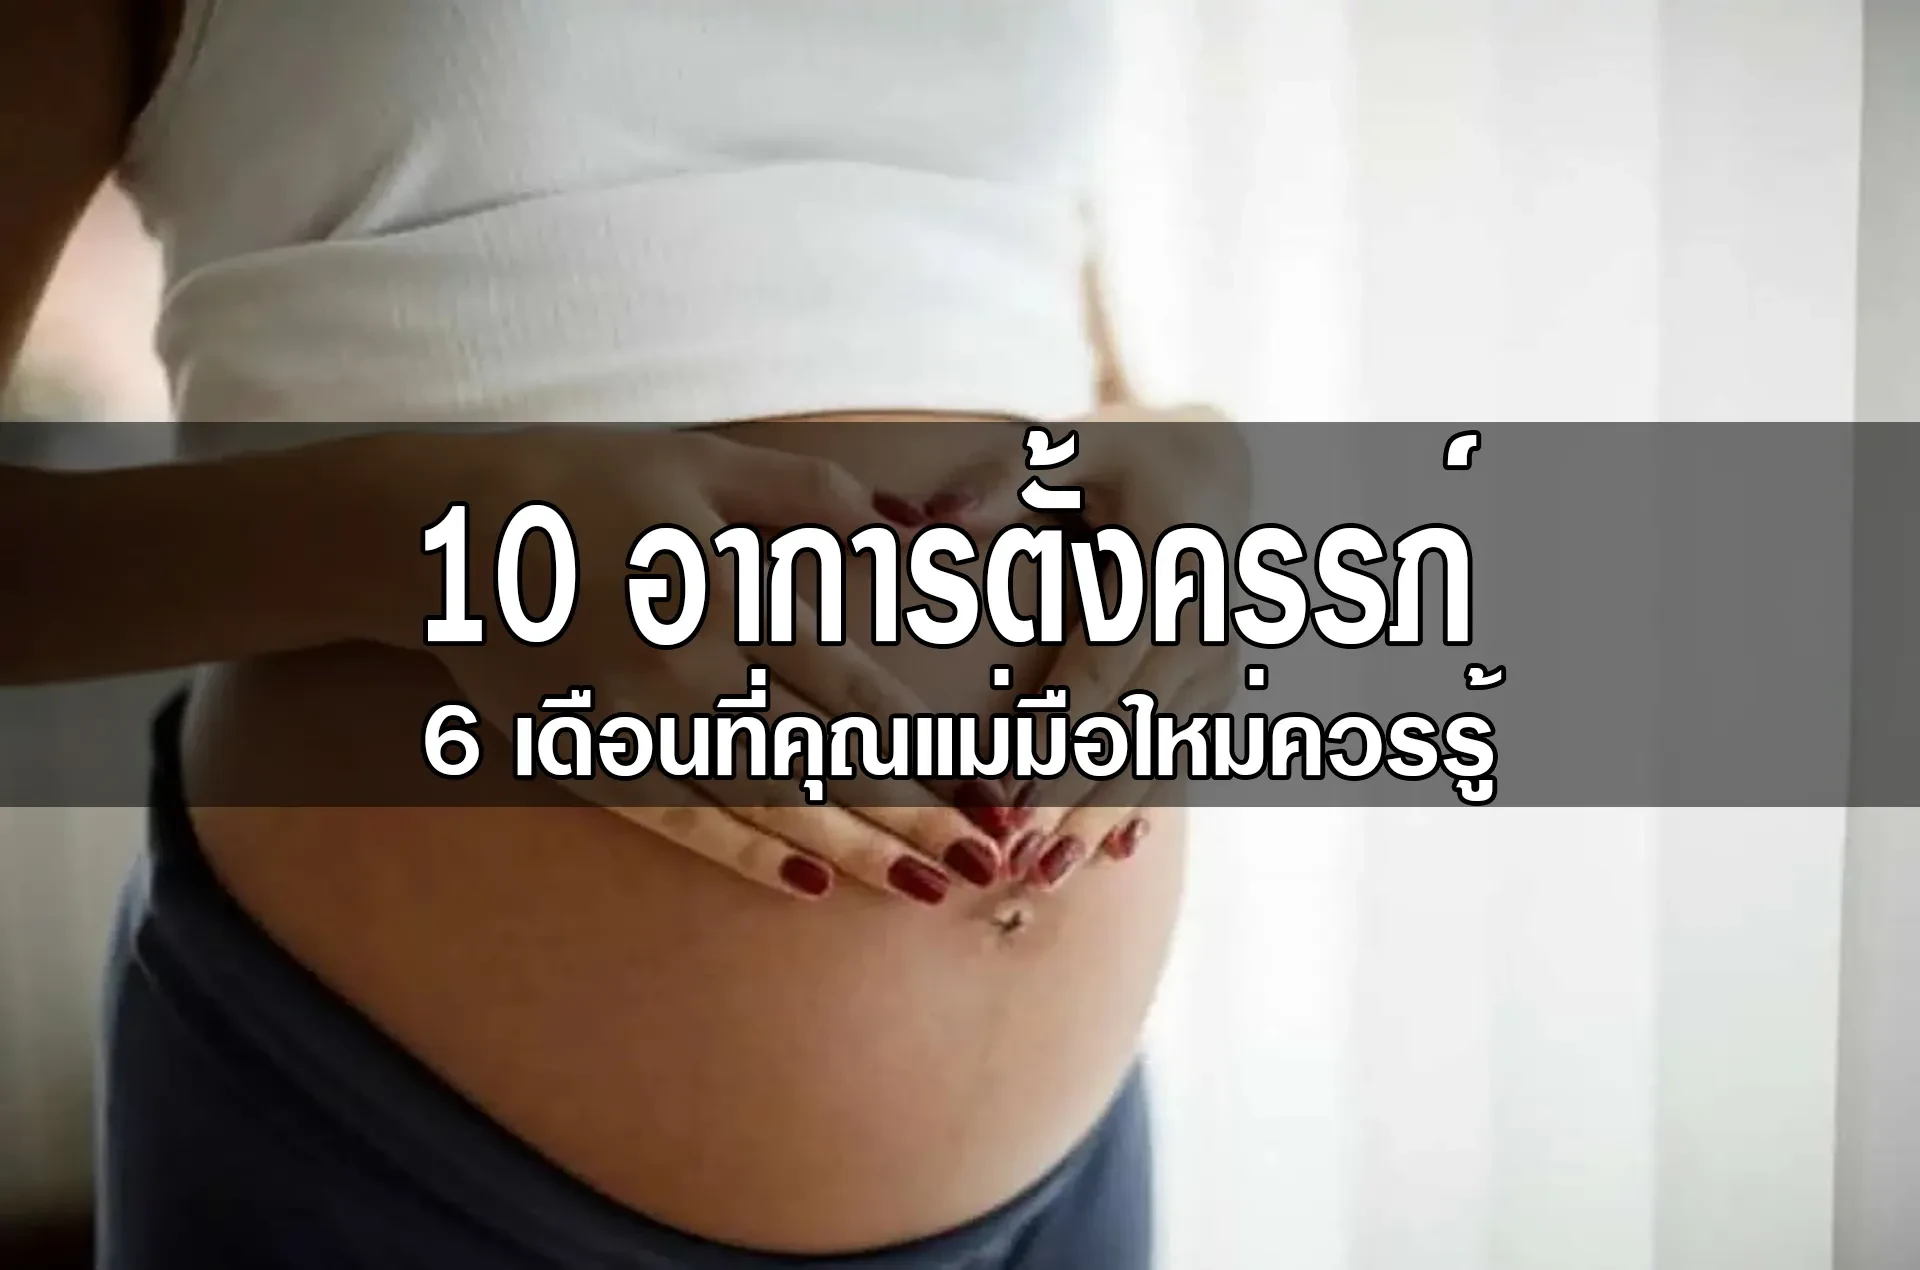 10 อาการตั้งครรภ์ในระยะ 6 เดือนที่คุณแม่มือใหม่ควรรู้